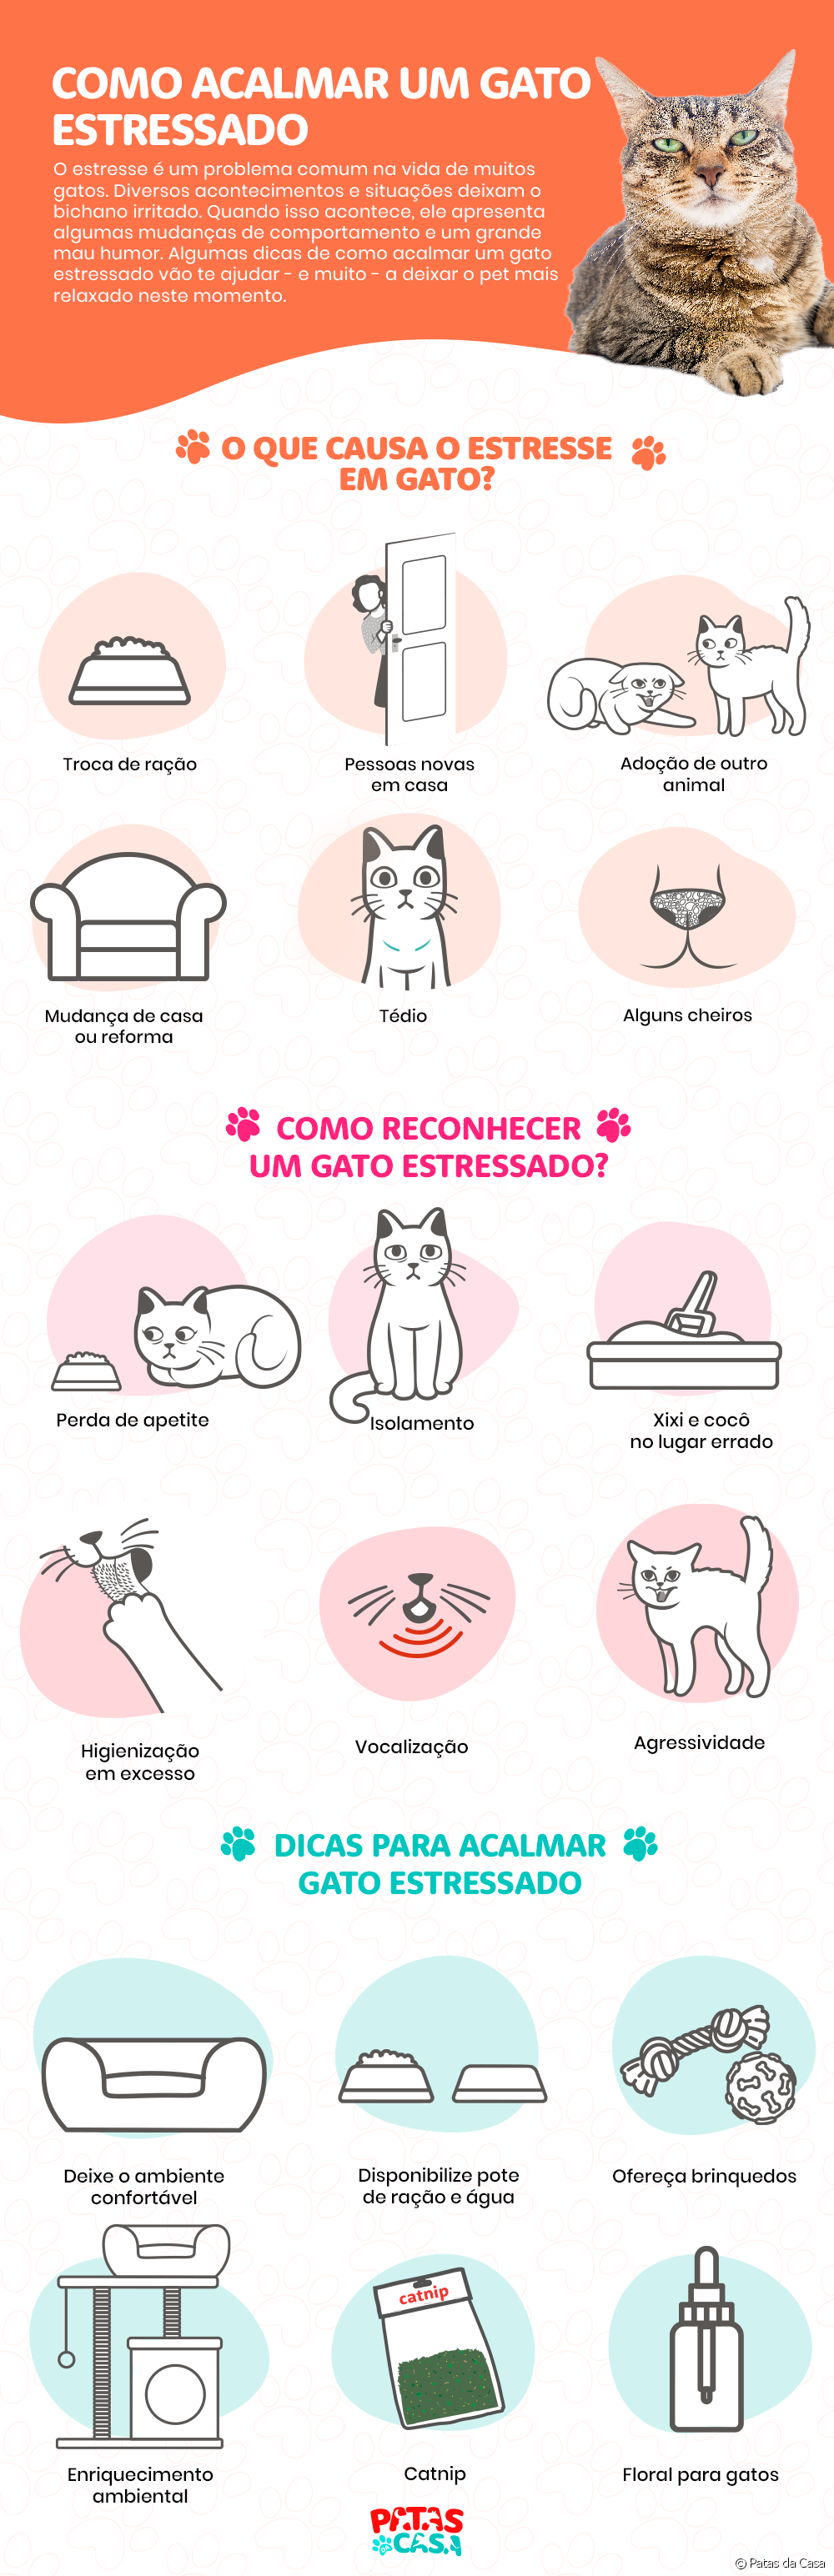  Stresset katt: se hvordan du kan roe katten i infografikk